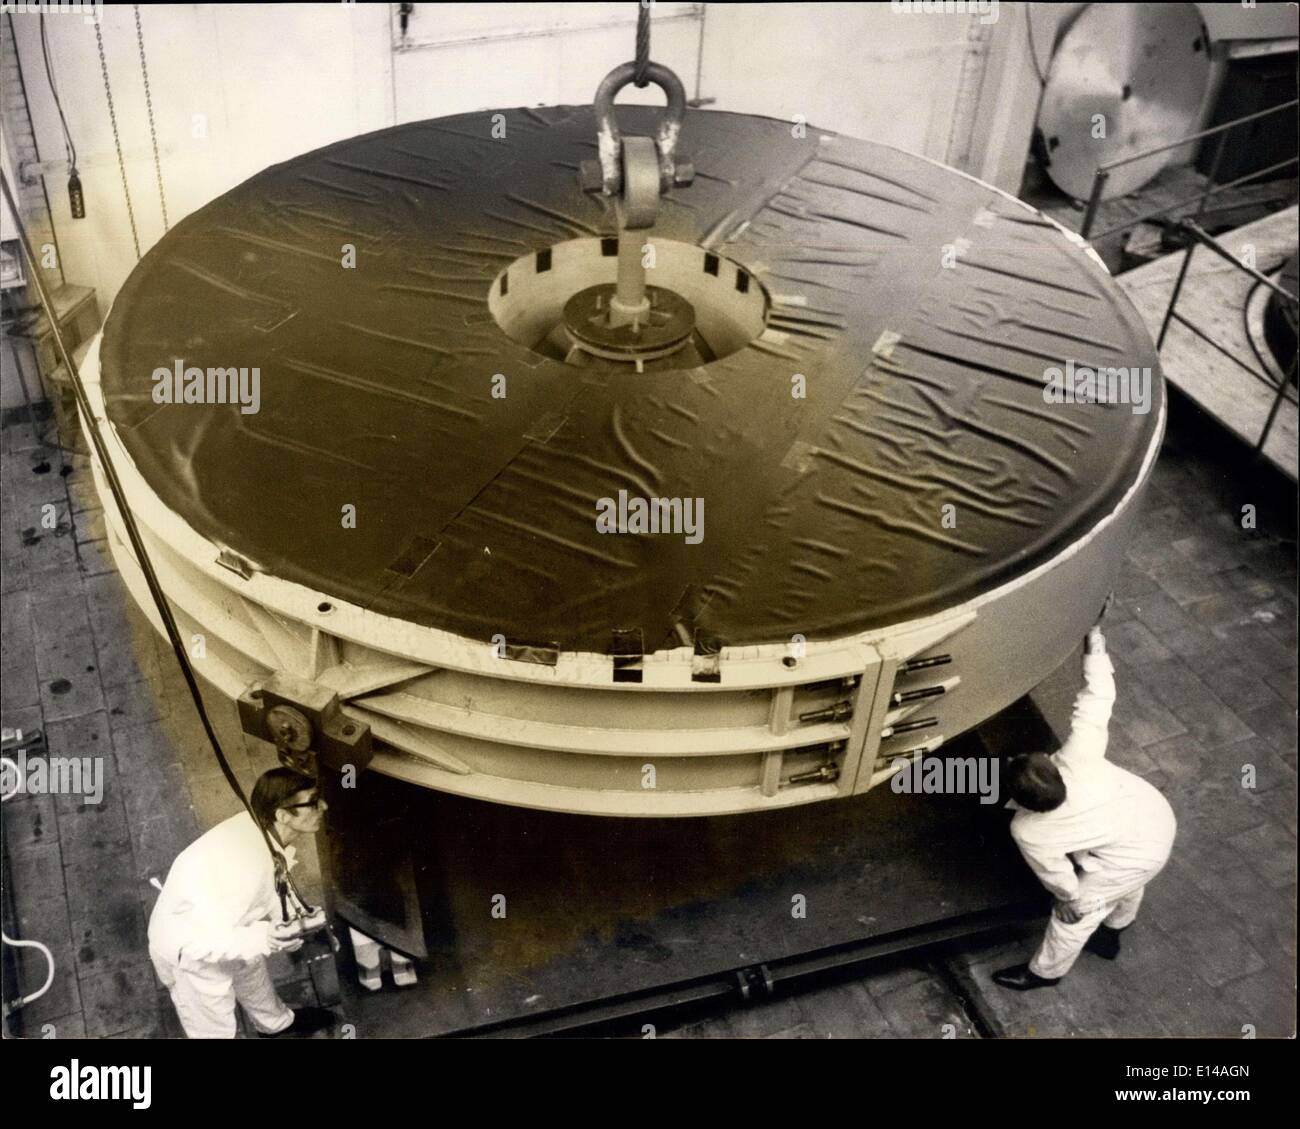 17 aprile 2012 - 20 Ton Telescope Mirror del valore di un milione arriva per la lucidatura a Newcastle: Il più grande pezzo di vetro mai importato nel Regno Unito, uno specchio telescopico da 20 tonnellate, è arrivato alla Grubb Parsone Works di Newcastle upon Tyne per un'operazione di levigatura e lucidatura di diciotto mesi. Il nuovo specchio da 155.5 pollici realizzato in vetro-ceramica a espansione zero chiamato ''CER Vit'' sviluppato da Owens Illinois U.S.A. è stato fuso a Toledo, Ohio, nell'aprile di quest'anno Foto Stock